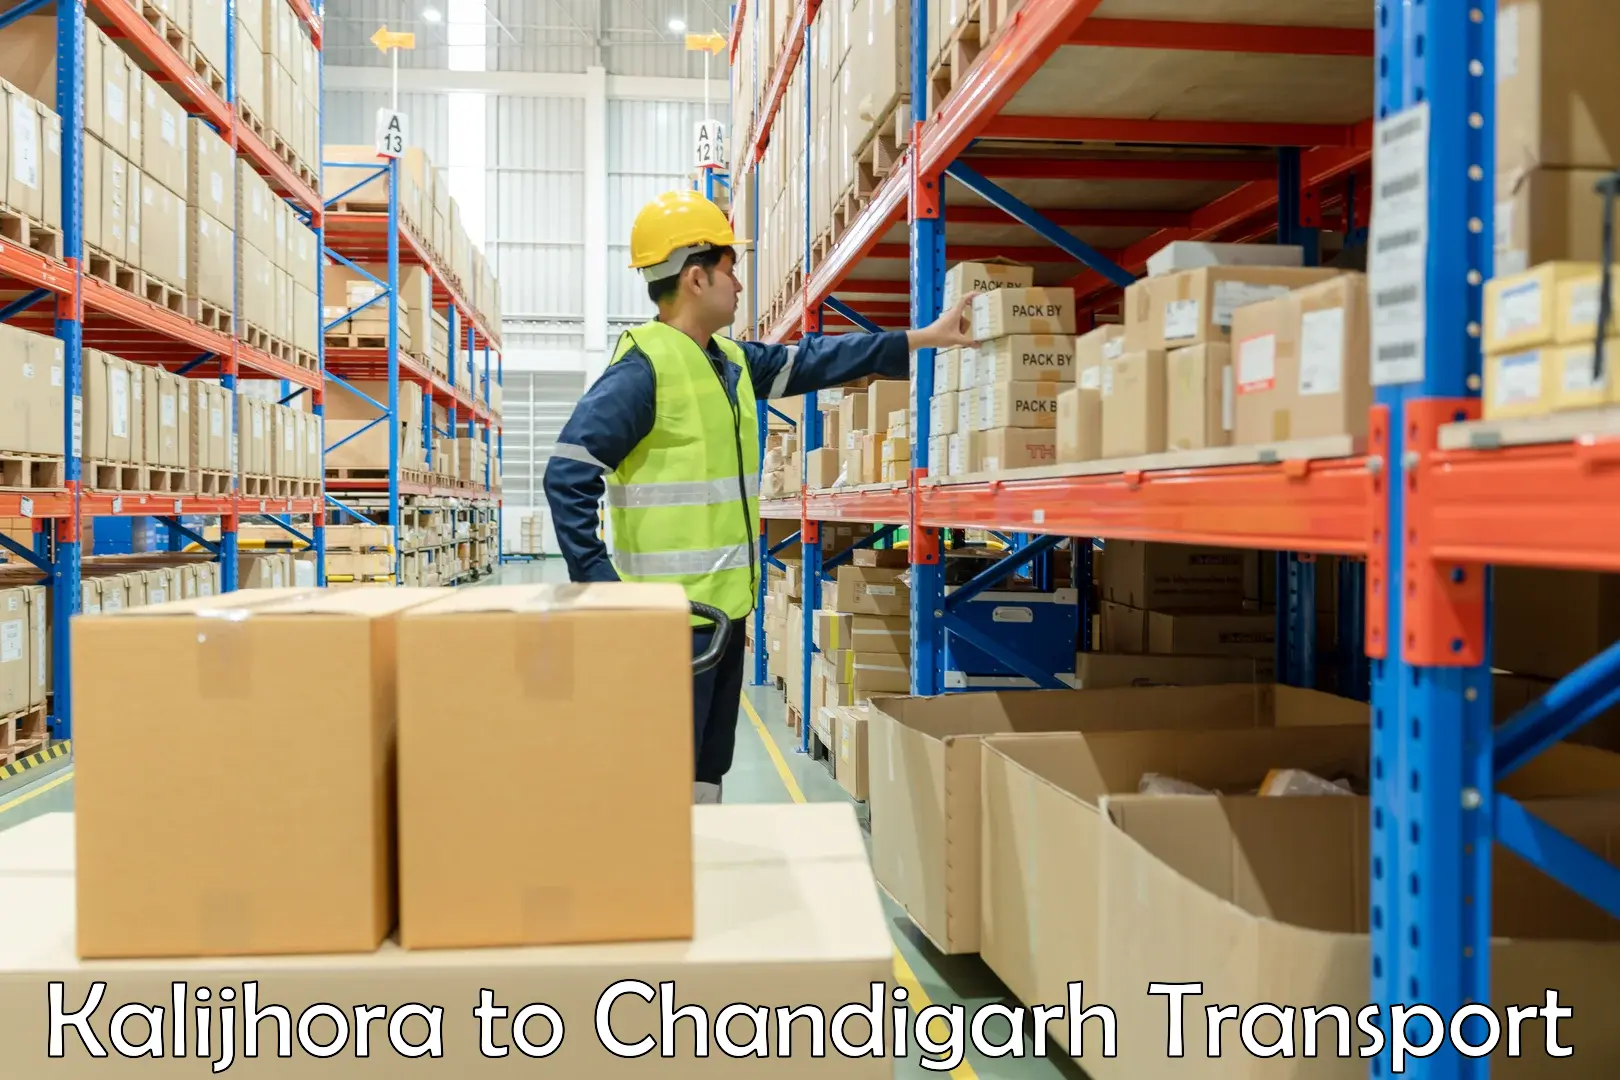 Container transport service Kalijhora to Chandigarh